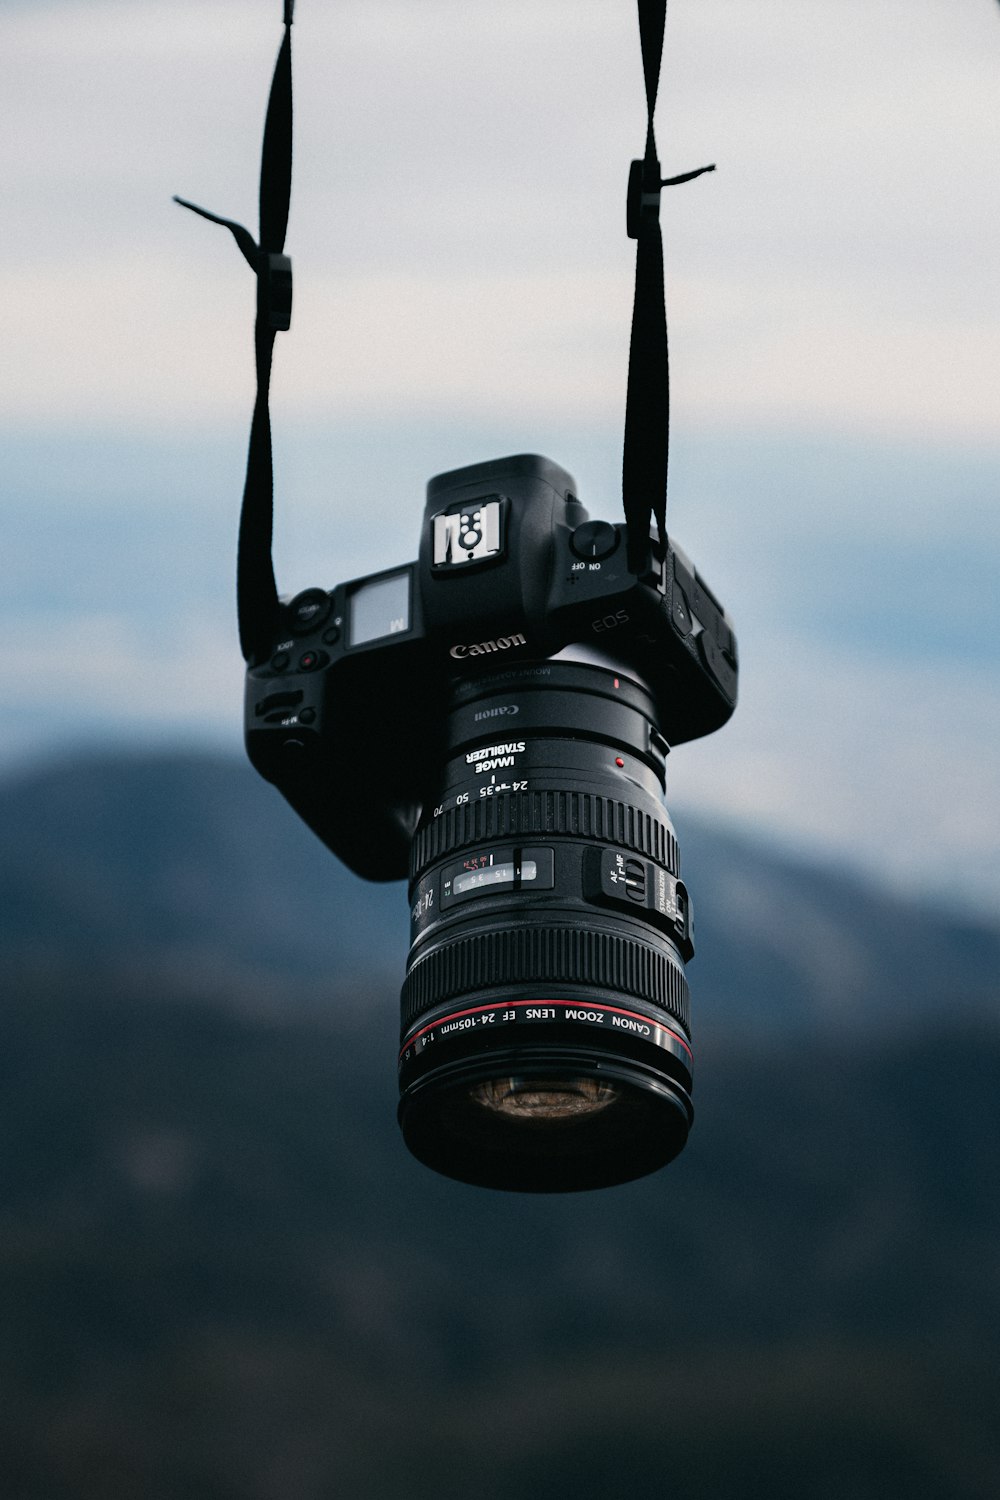 Appareil photo reflex numérique Nikon noir sur trépied noir